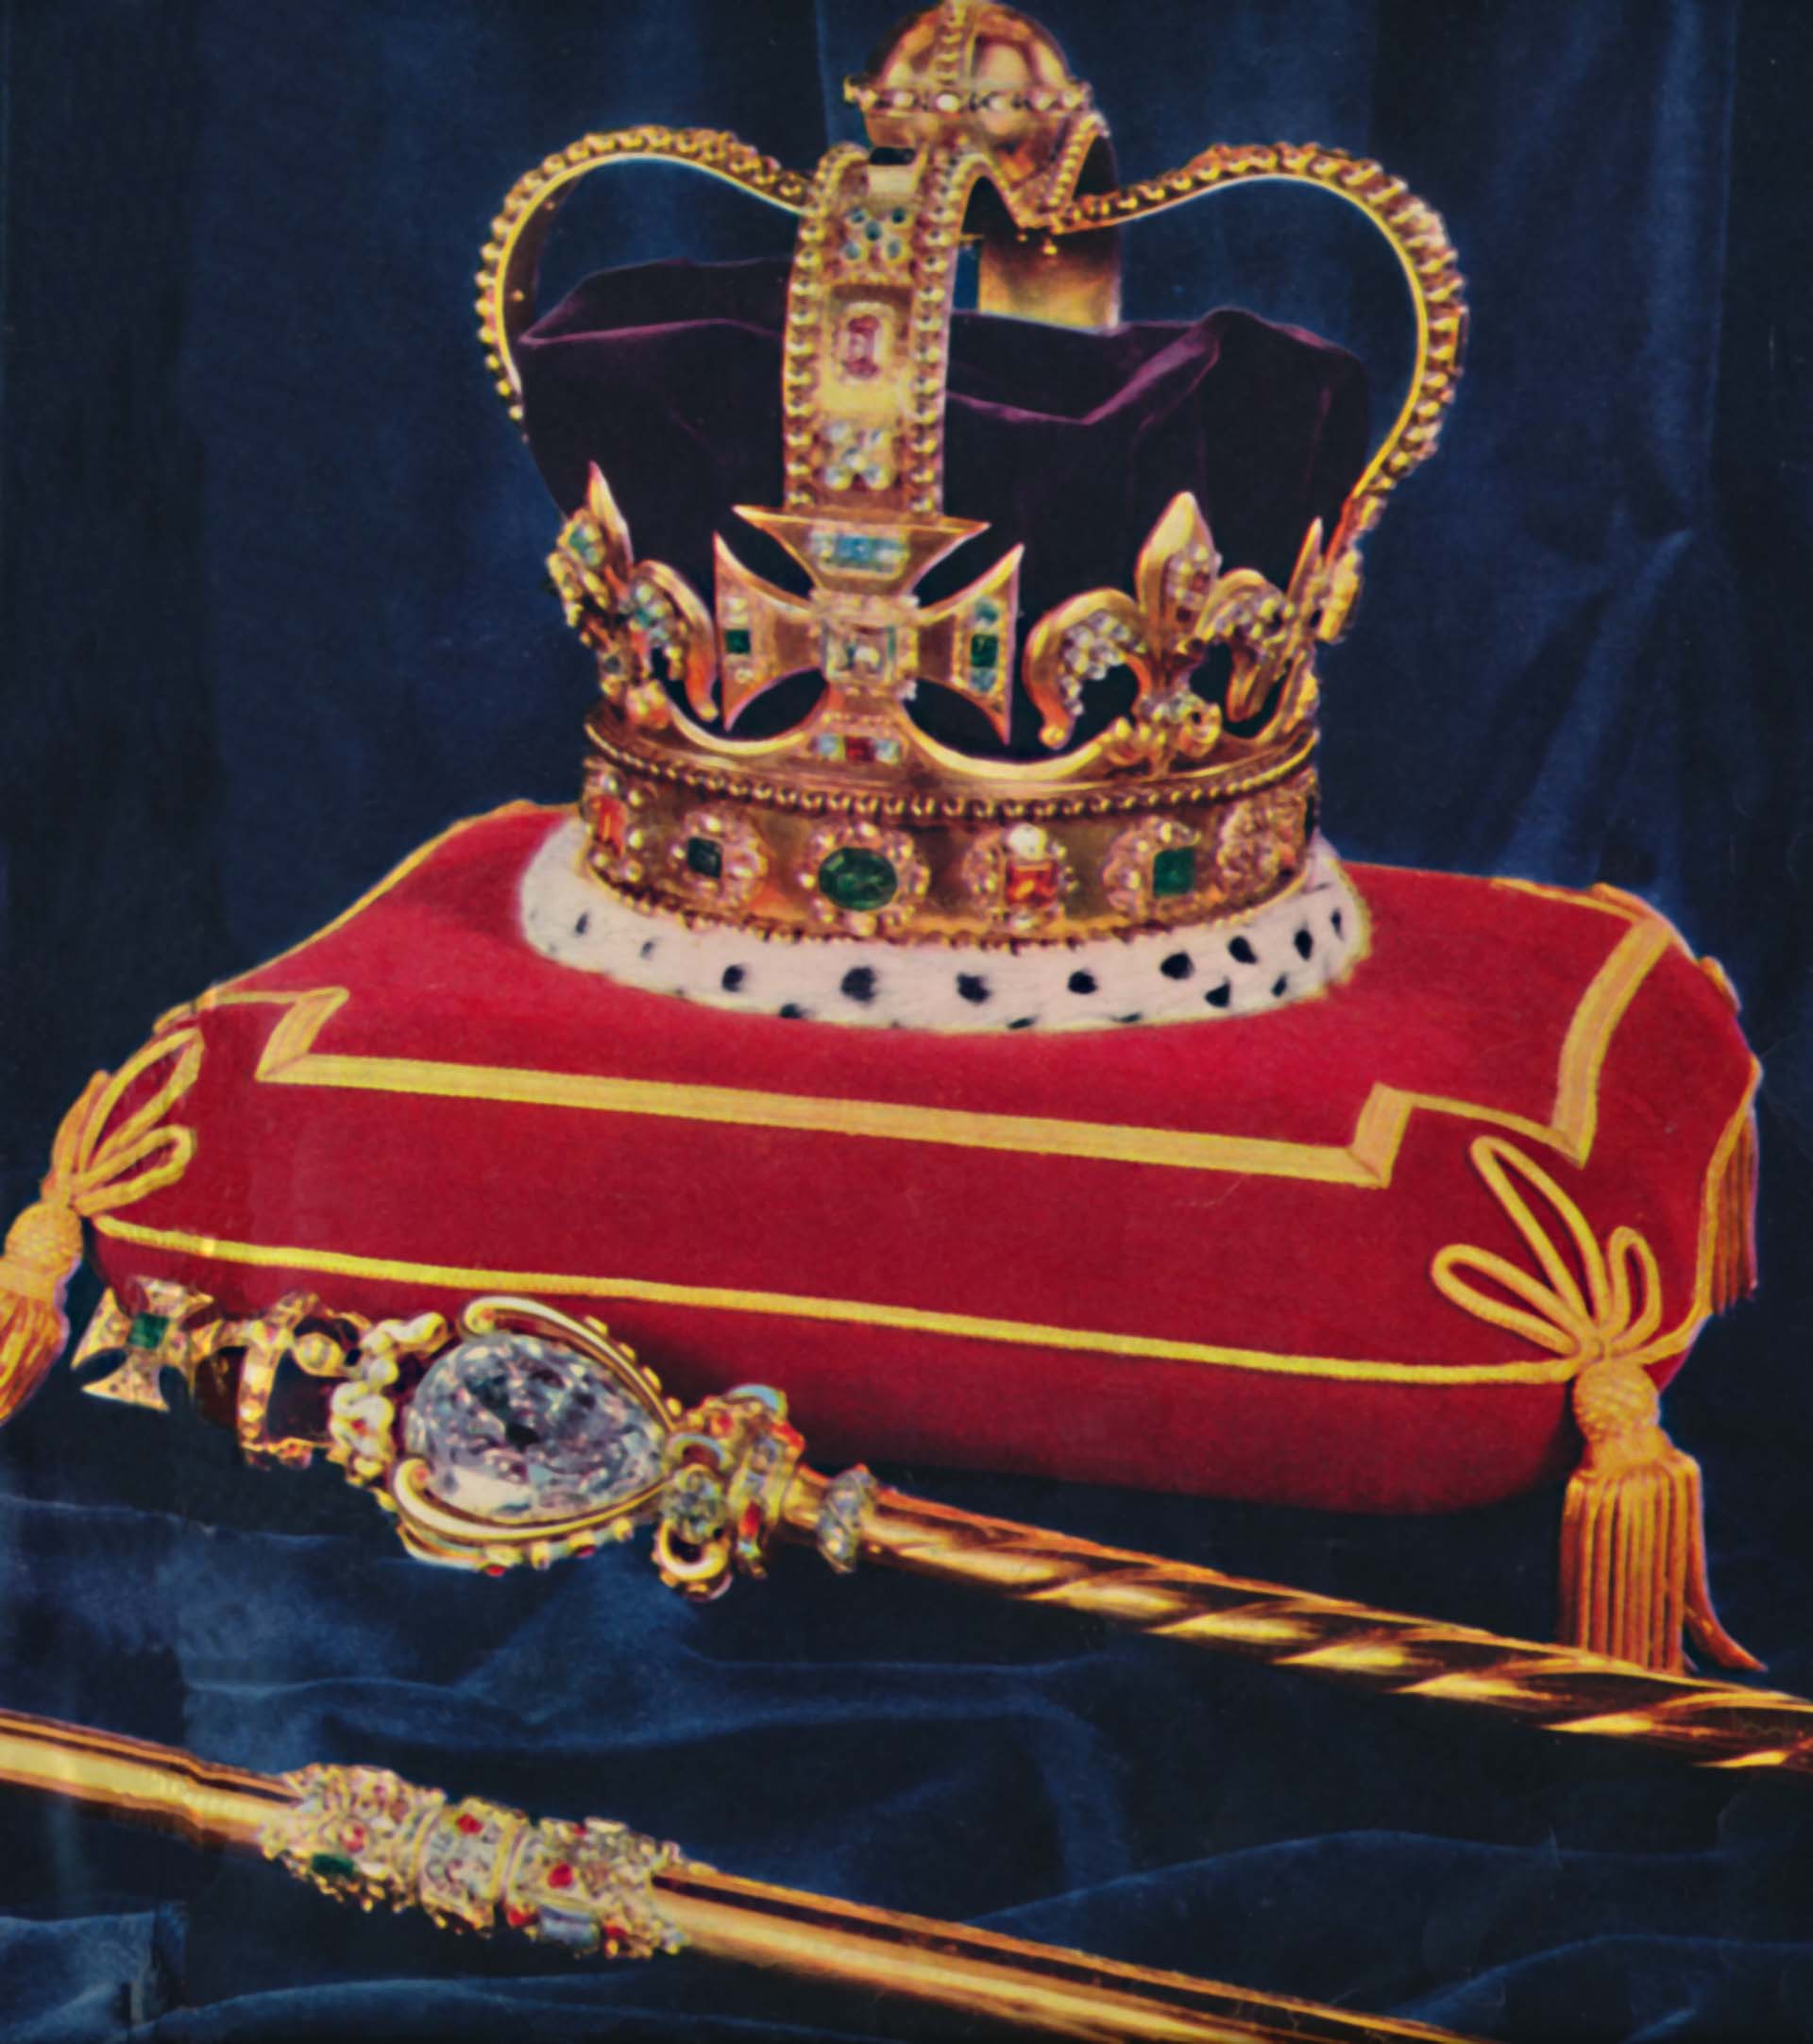 El Reino Unido es el único país de Europa que sigue coronando a sus reyes, por eso la corona juega un papel primordial. La más antigua es la de San Eduardo y se reserva exclusivamente para la coronación. (Photo by Print Collector/Getty Images)